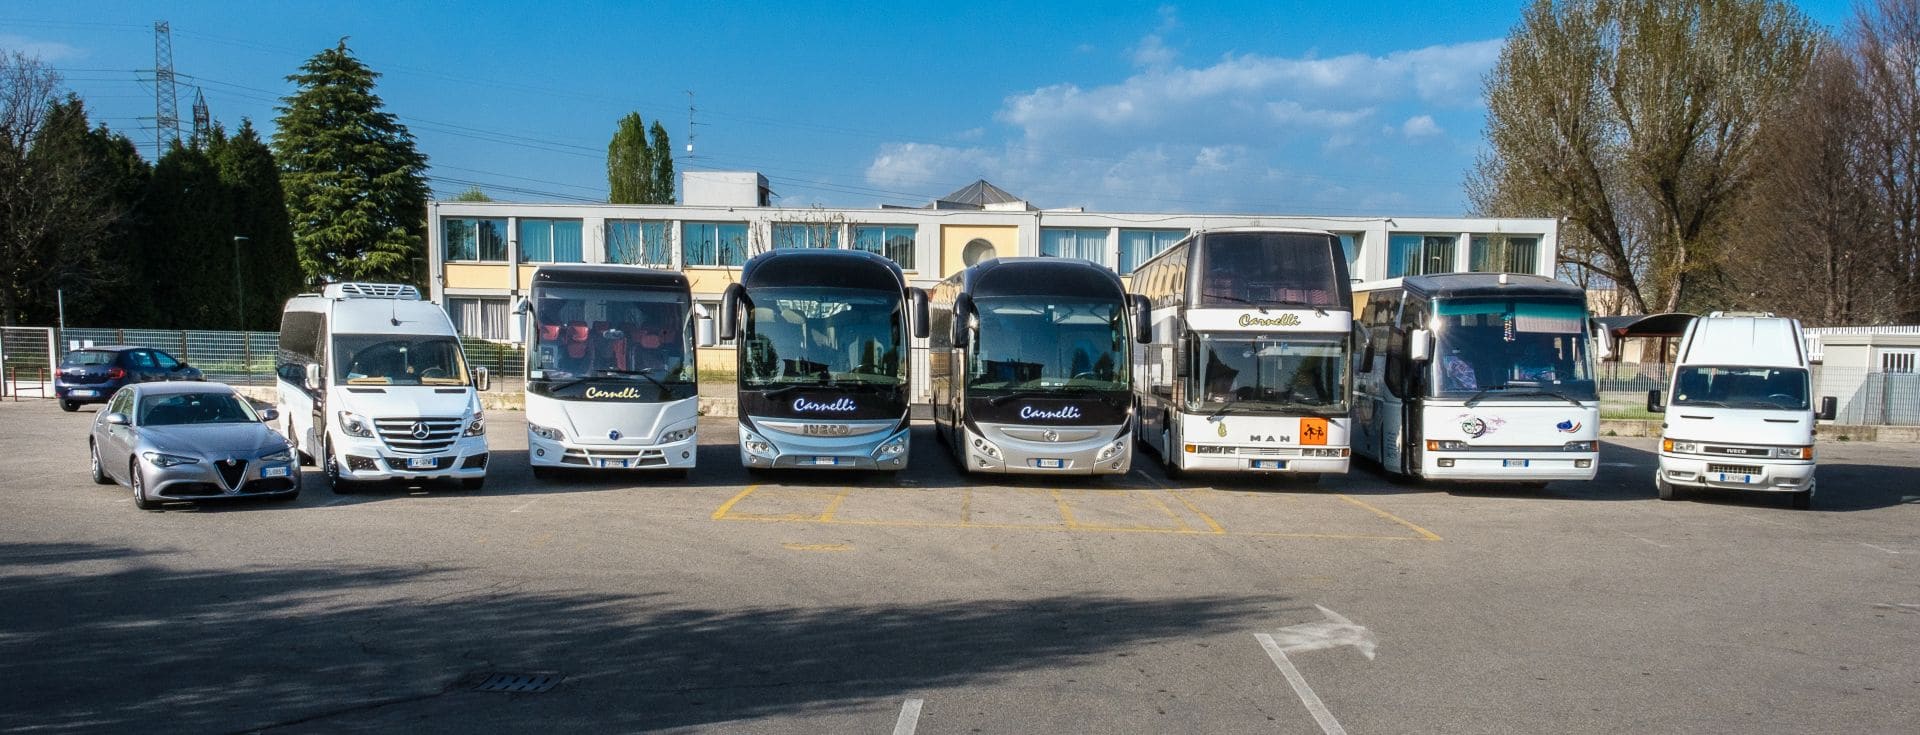 Noleggio pullman, bus, minibus Milano